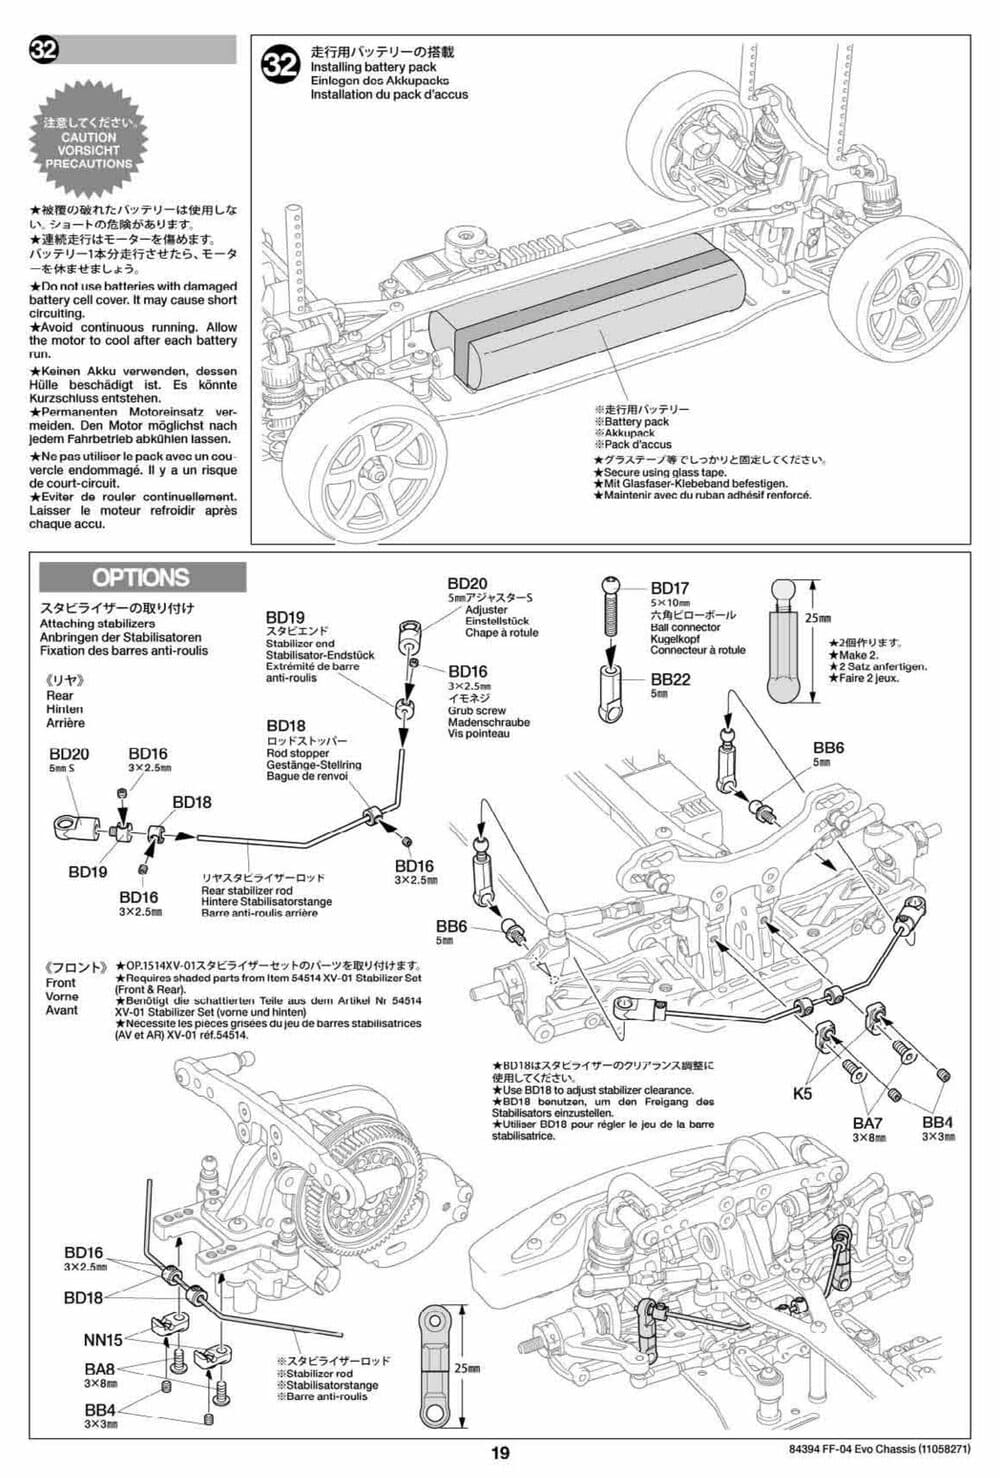 Tamiya - FF-04 Evo Chassis - Manual - Page 19